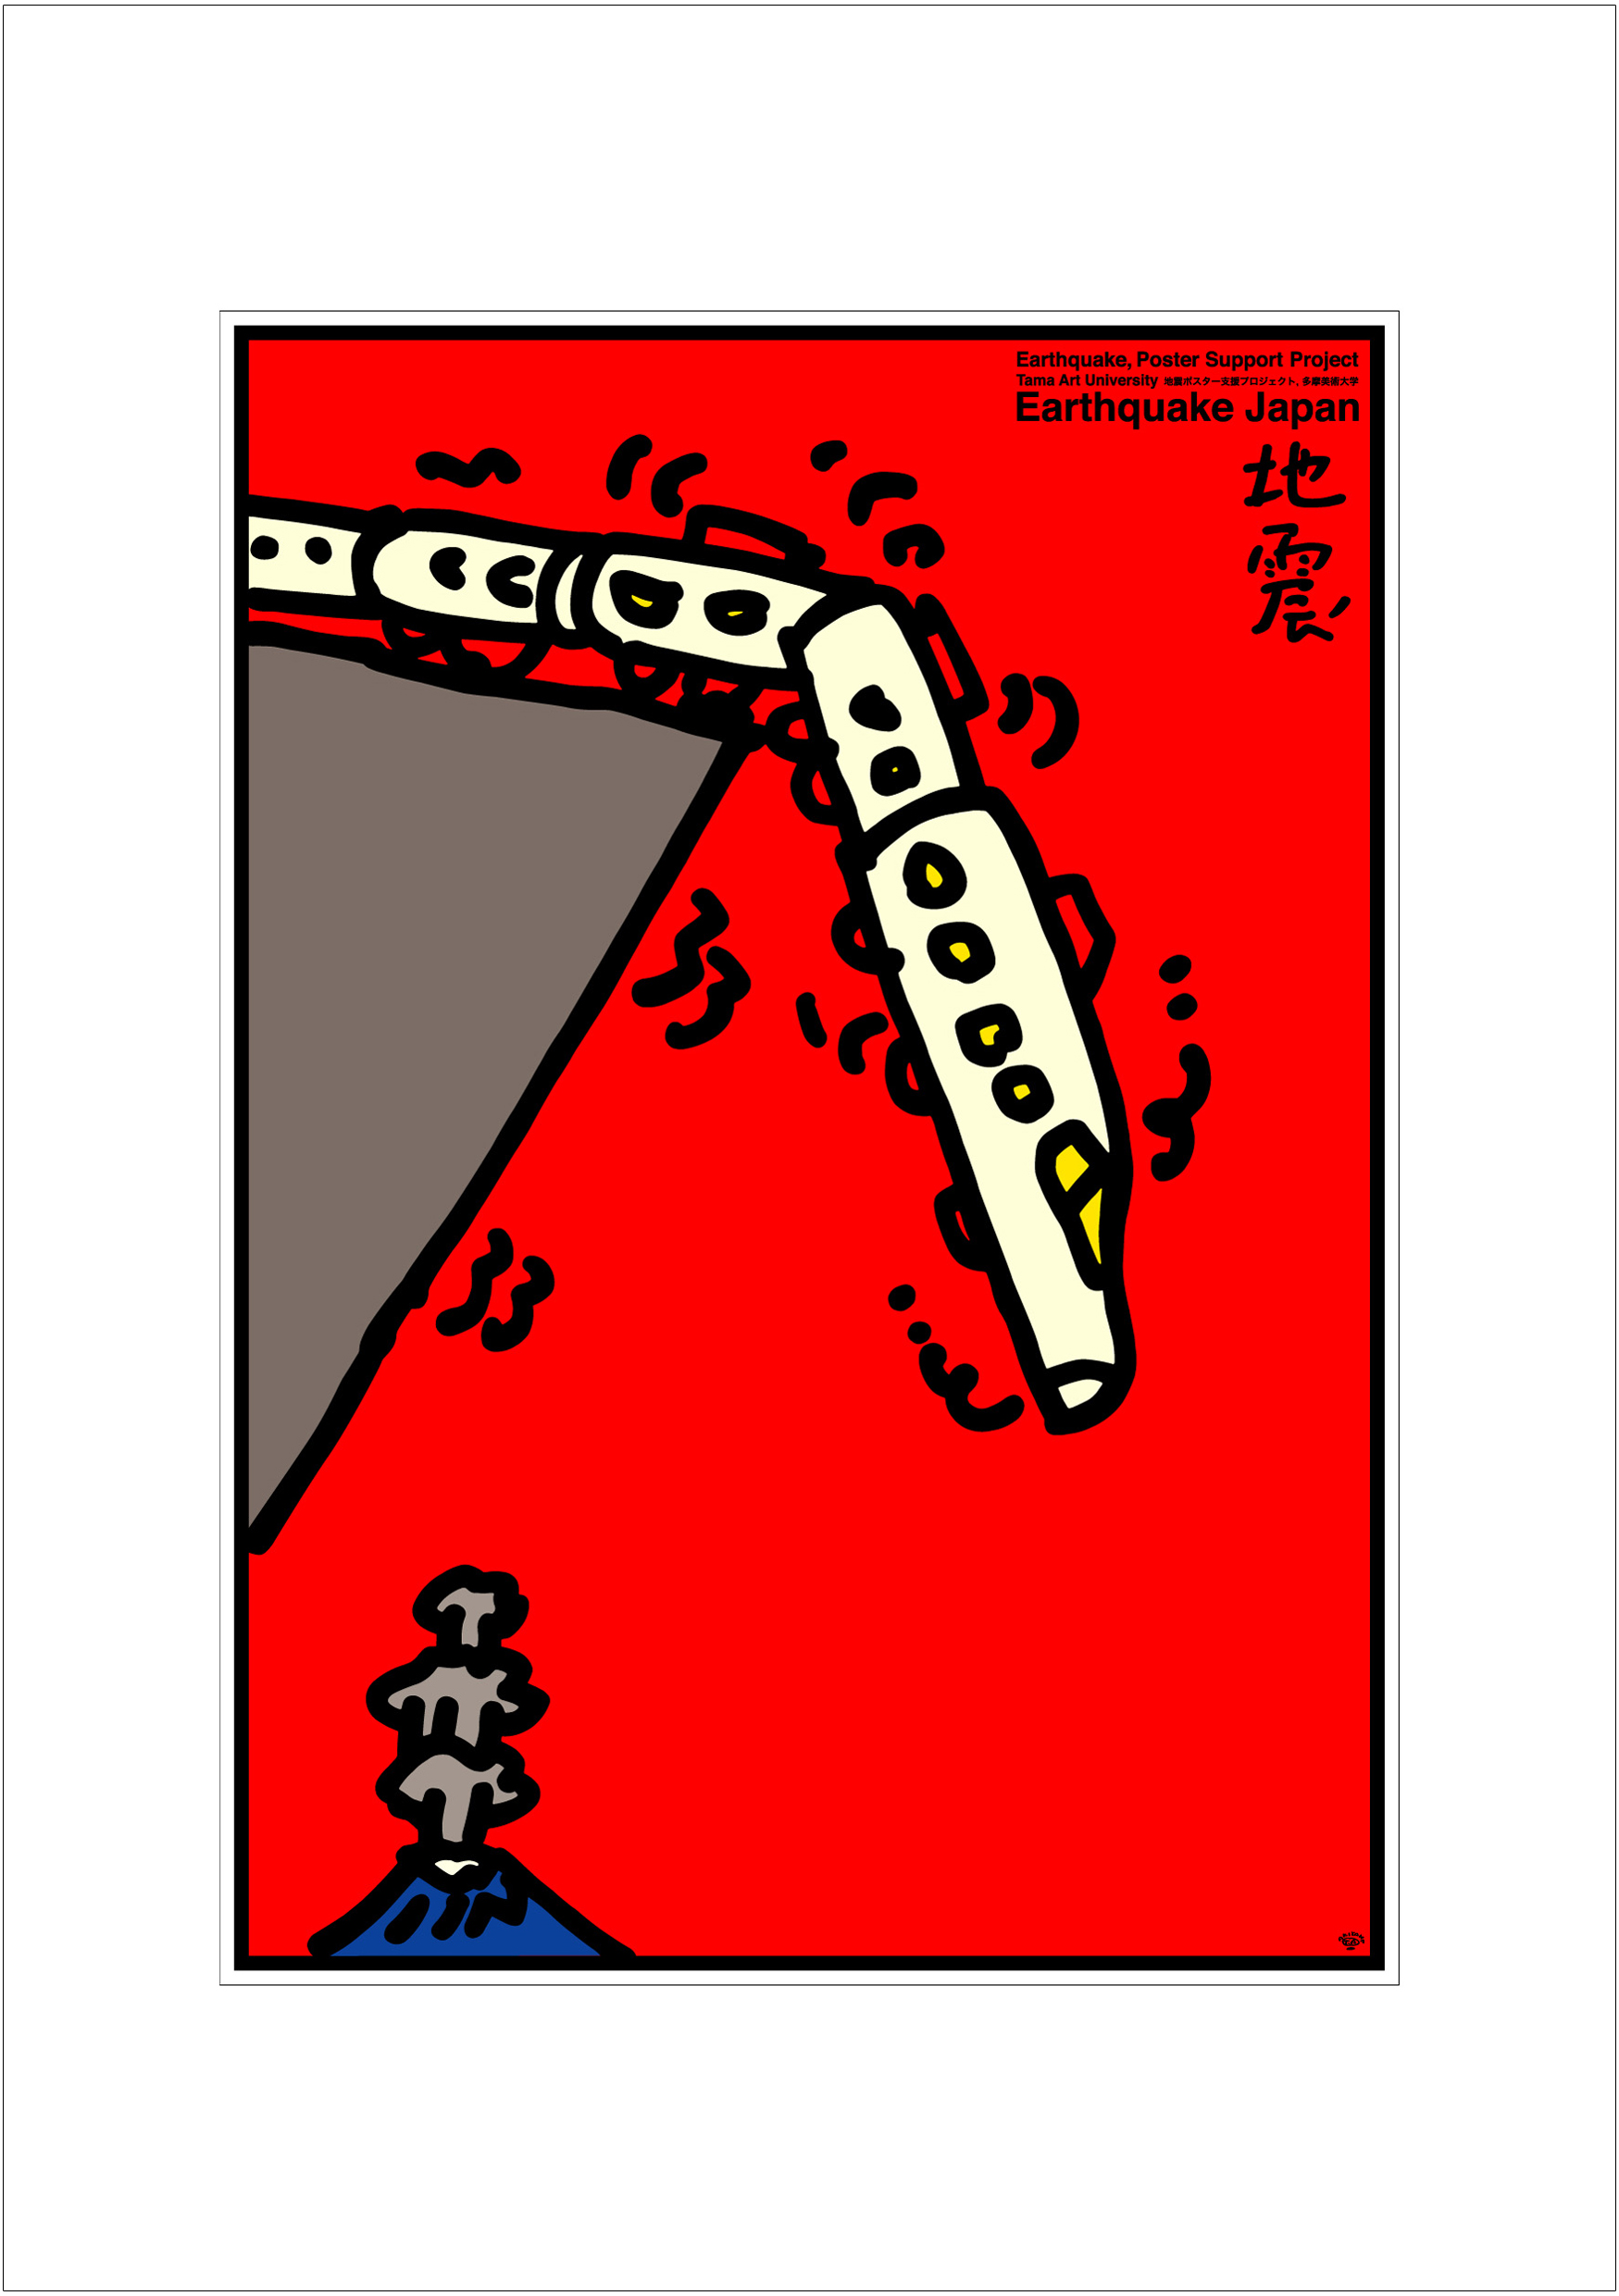 ポスターアーティスト秋山孝が2008年に制作したアートカード「アートカード ポスター 2008 2」